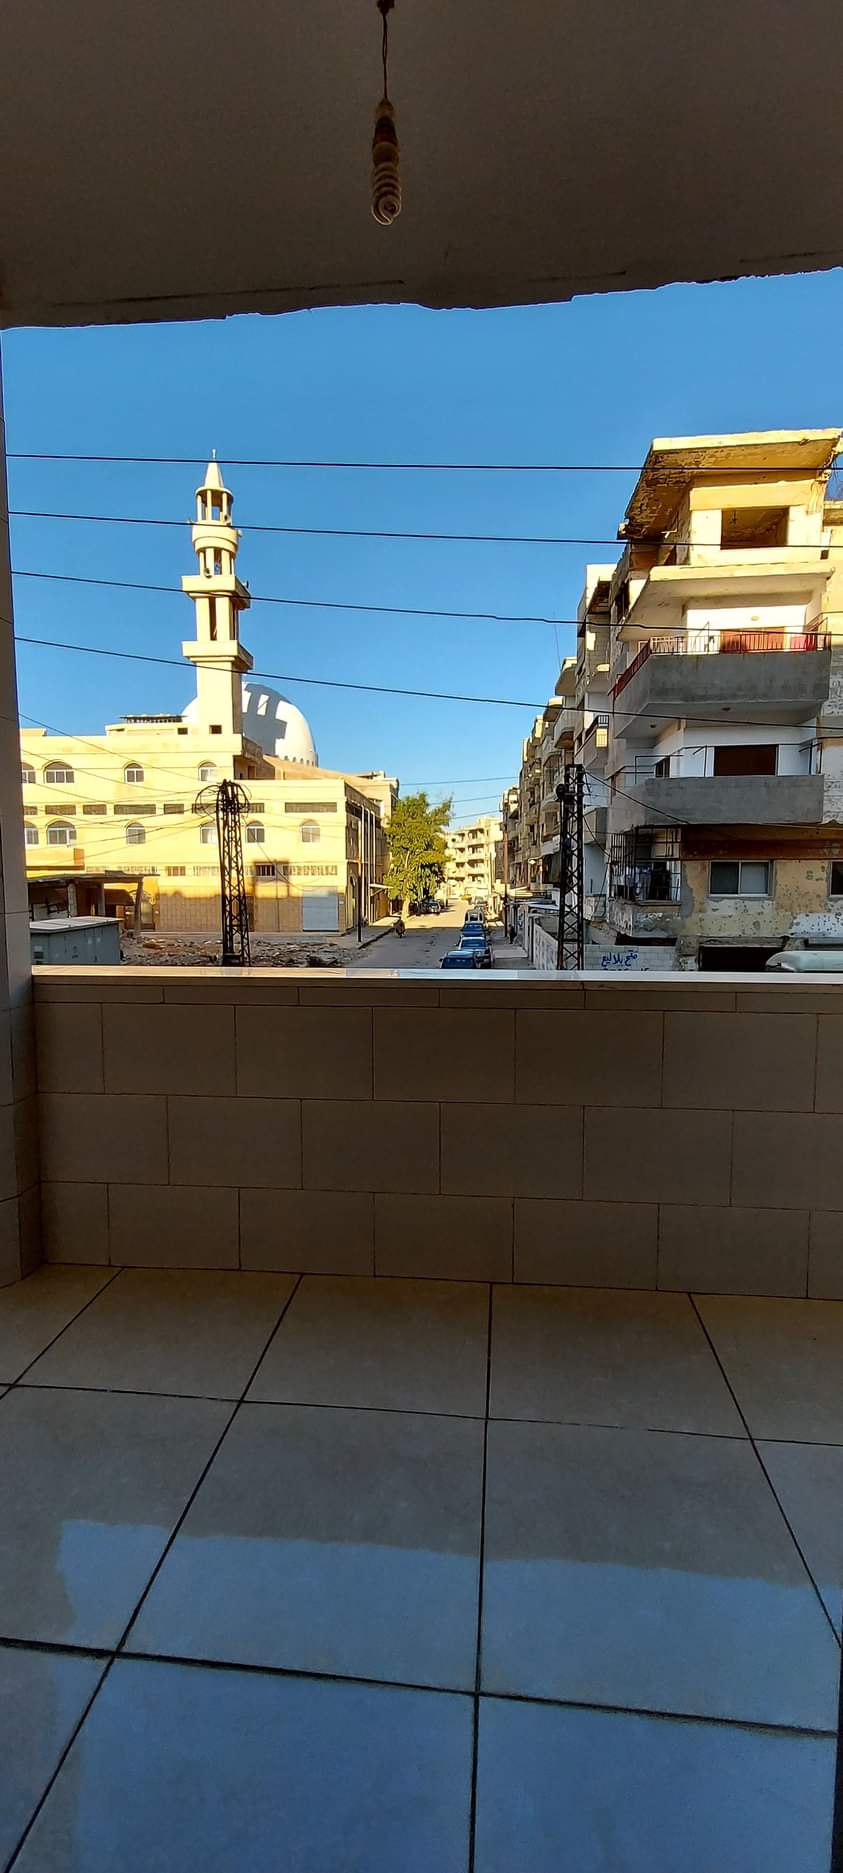 شقة للبيع في حمص القصور مقابل جامع شسي باشا